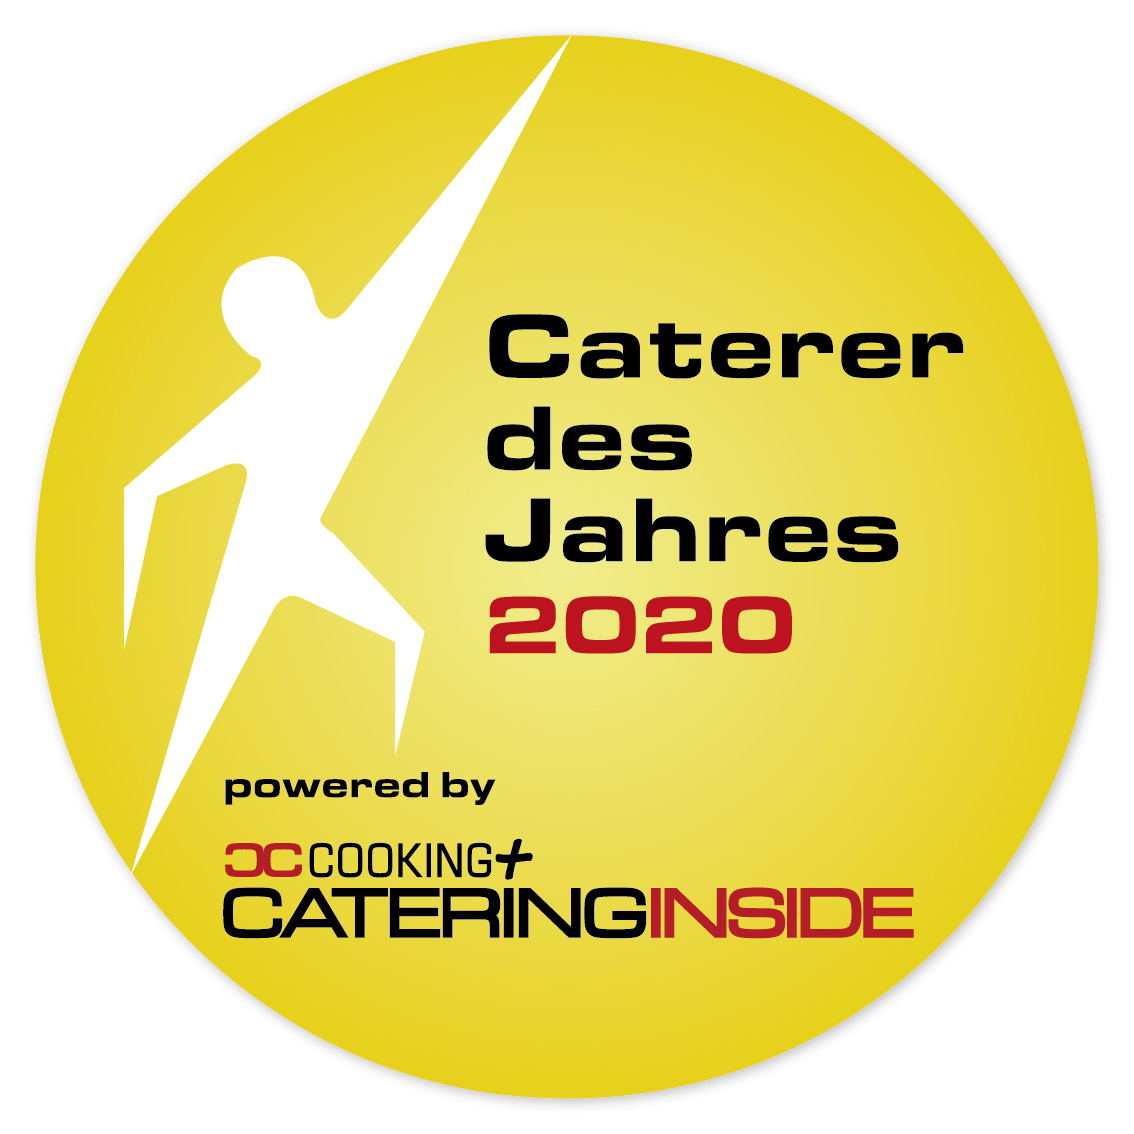 Caterer des Jahres 2020 - Logo